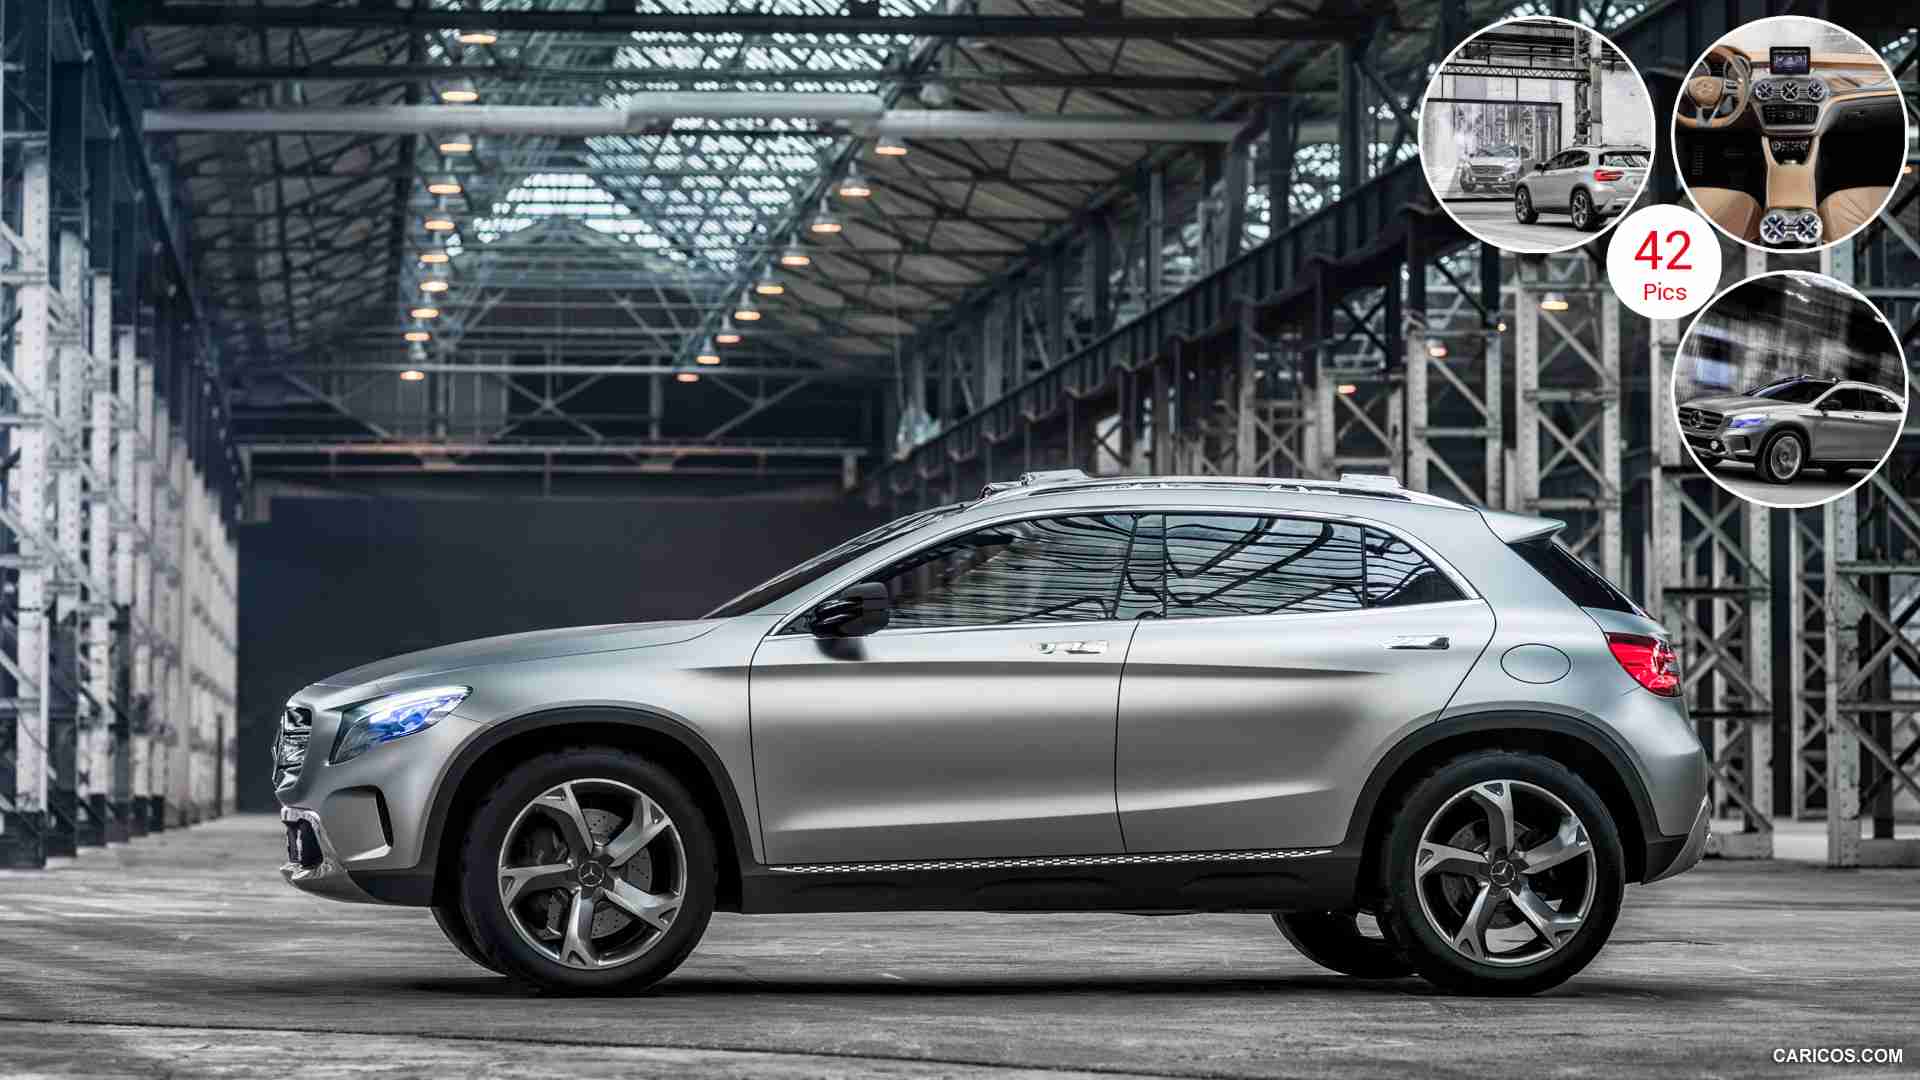 2013 Mercedes Benz GLA Concept - Side HD Wallpaper 1920x1080